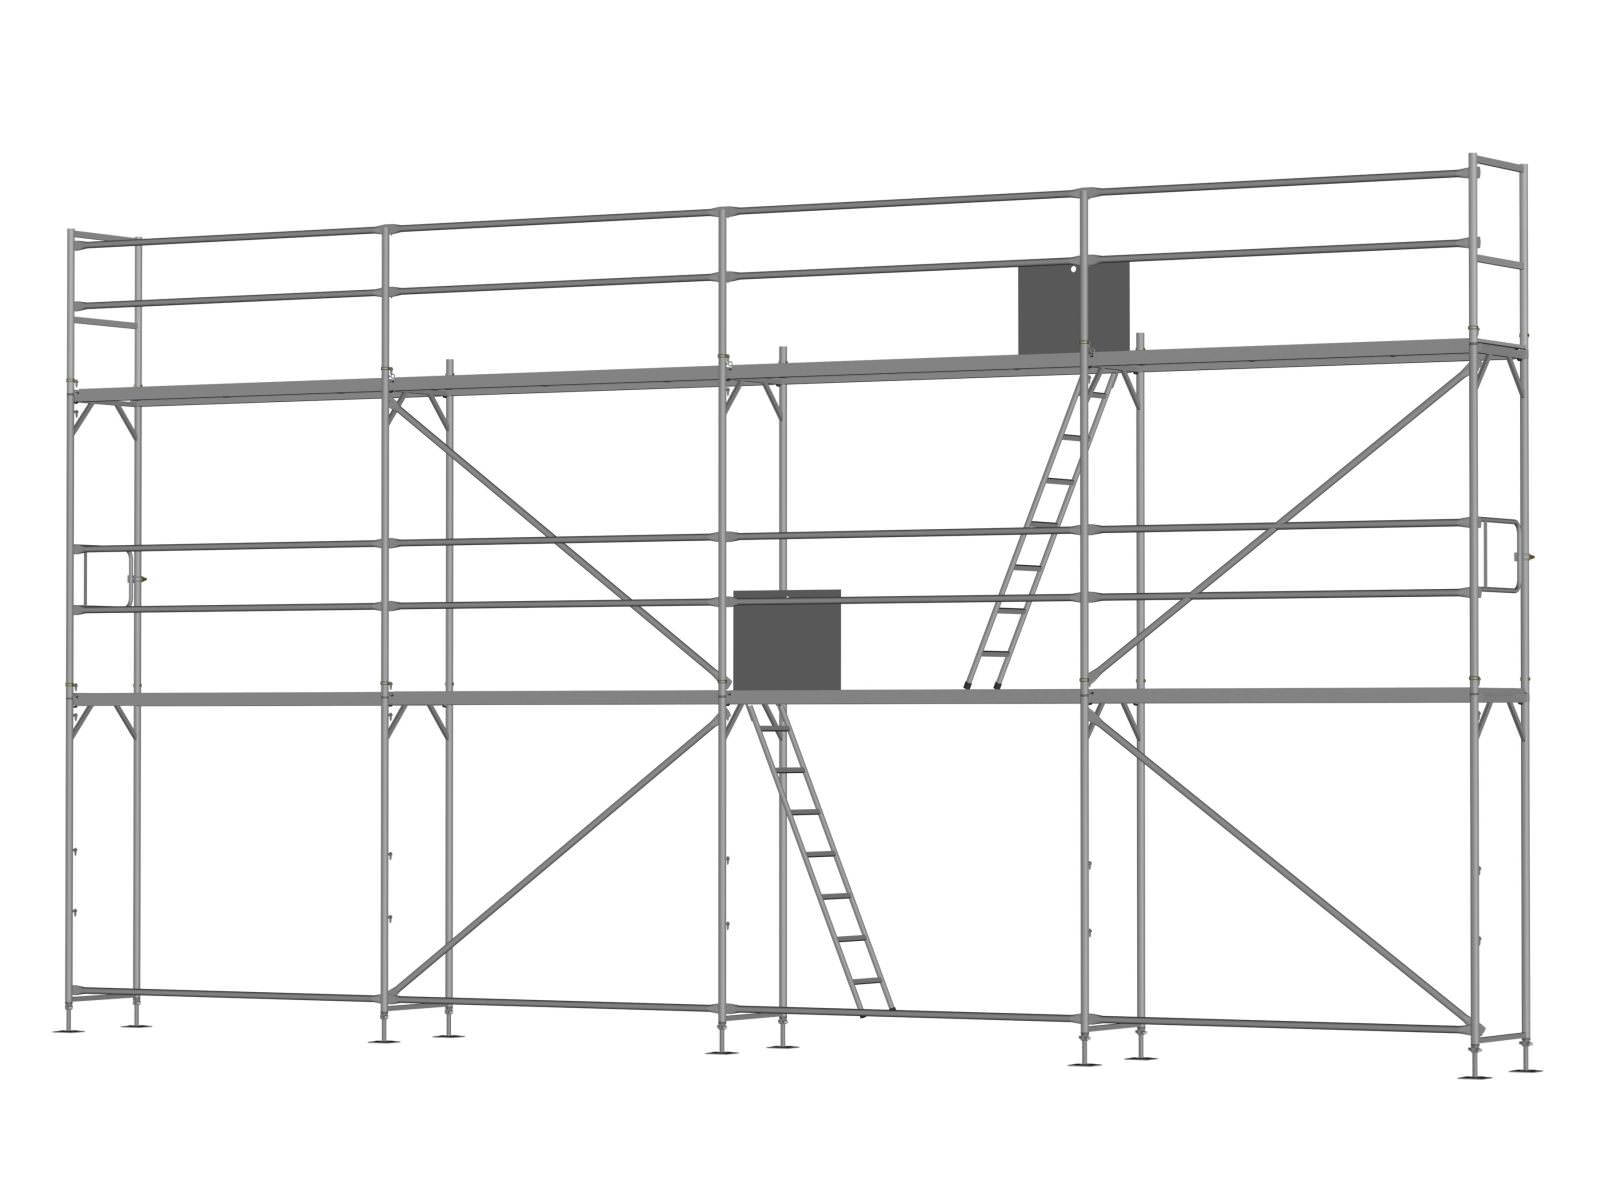 Stahl Traufseitengerüst 60 m², Feldlänge 2,5 m - Basis-Gerüst inkl. Aufstieg & Befestigung